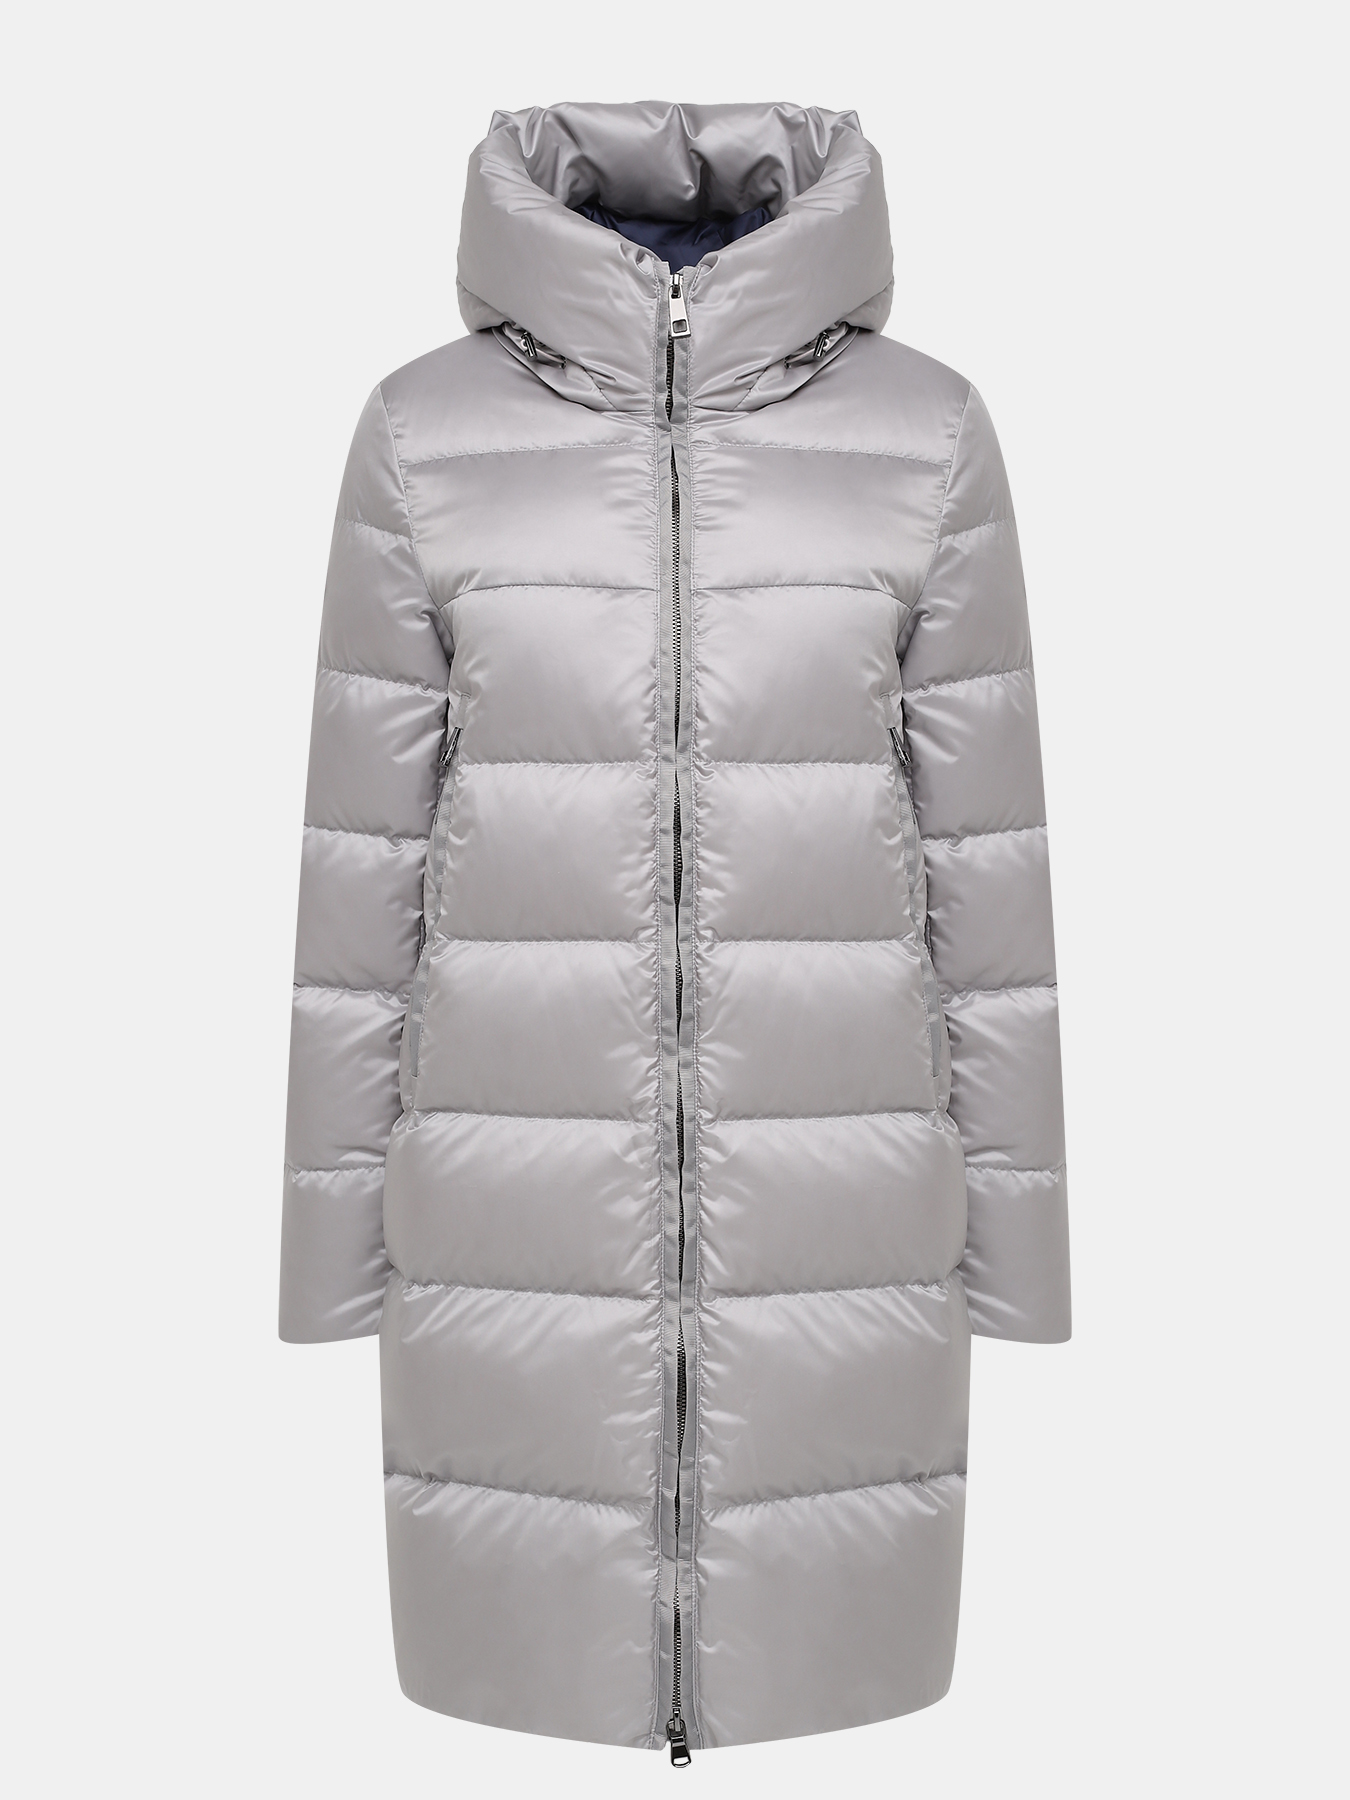 Пальто зимнее AVI 433618-025, цвет серый, размер 48